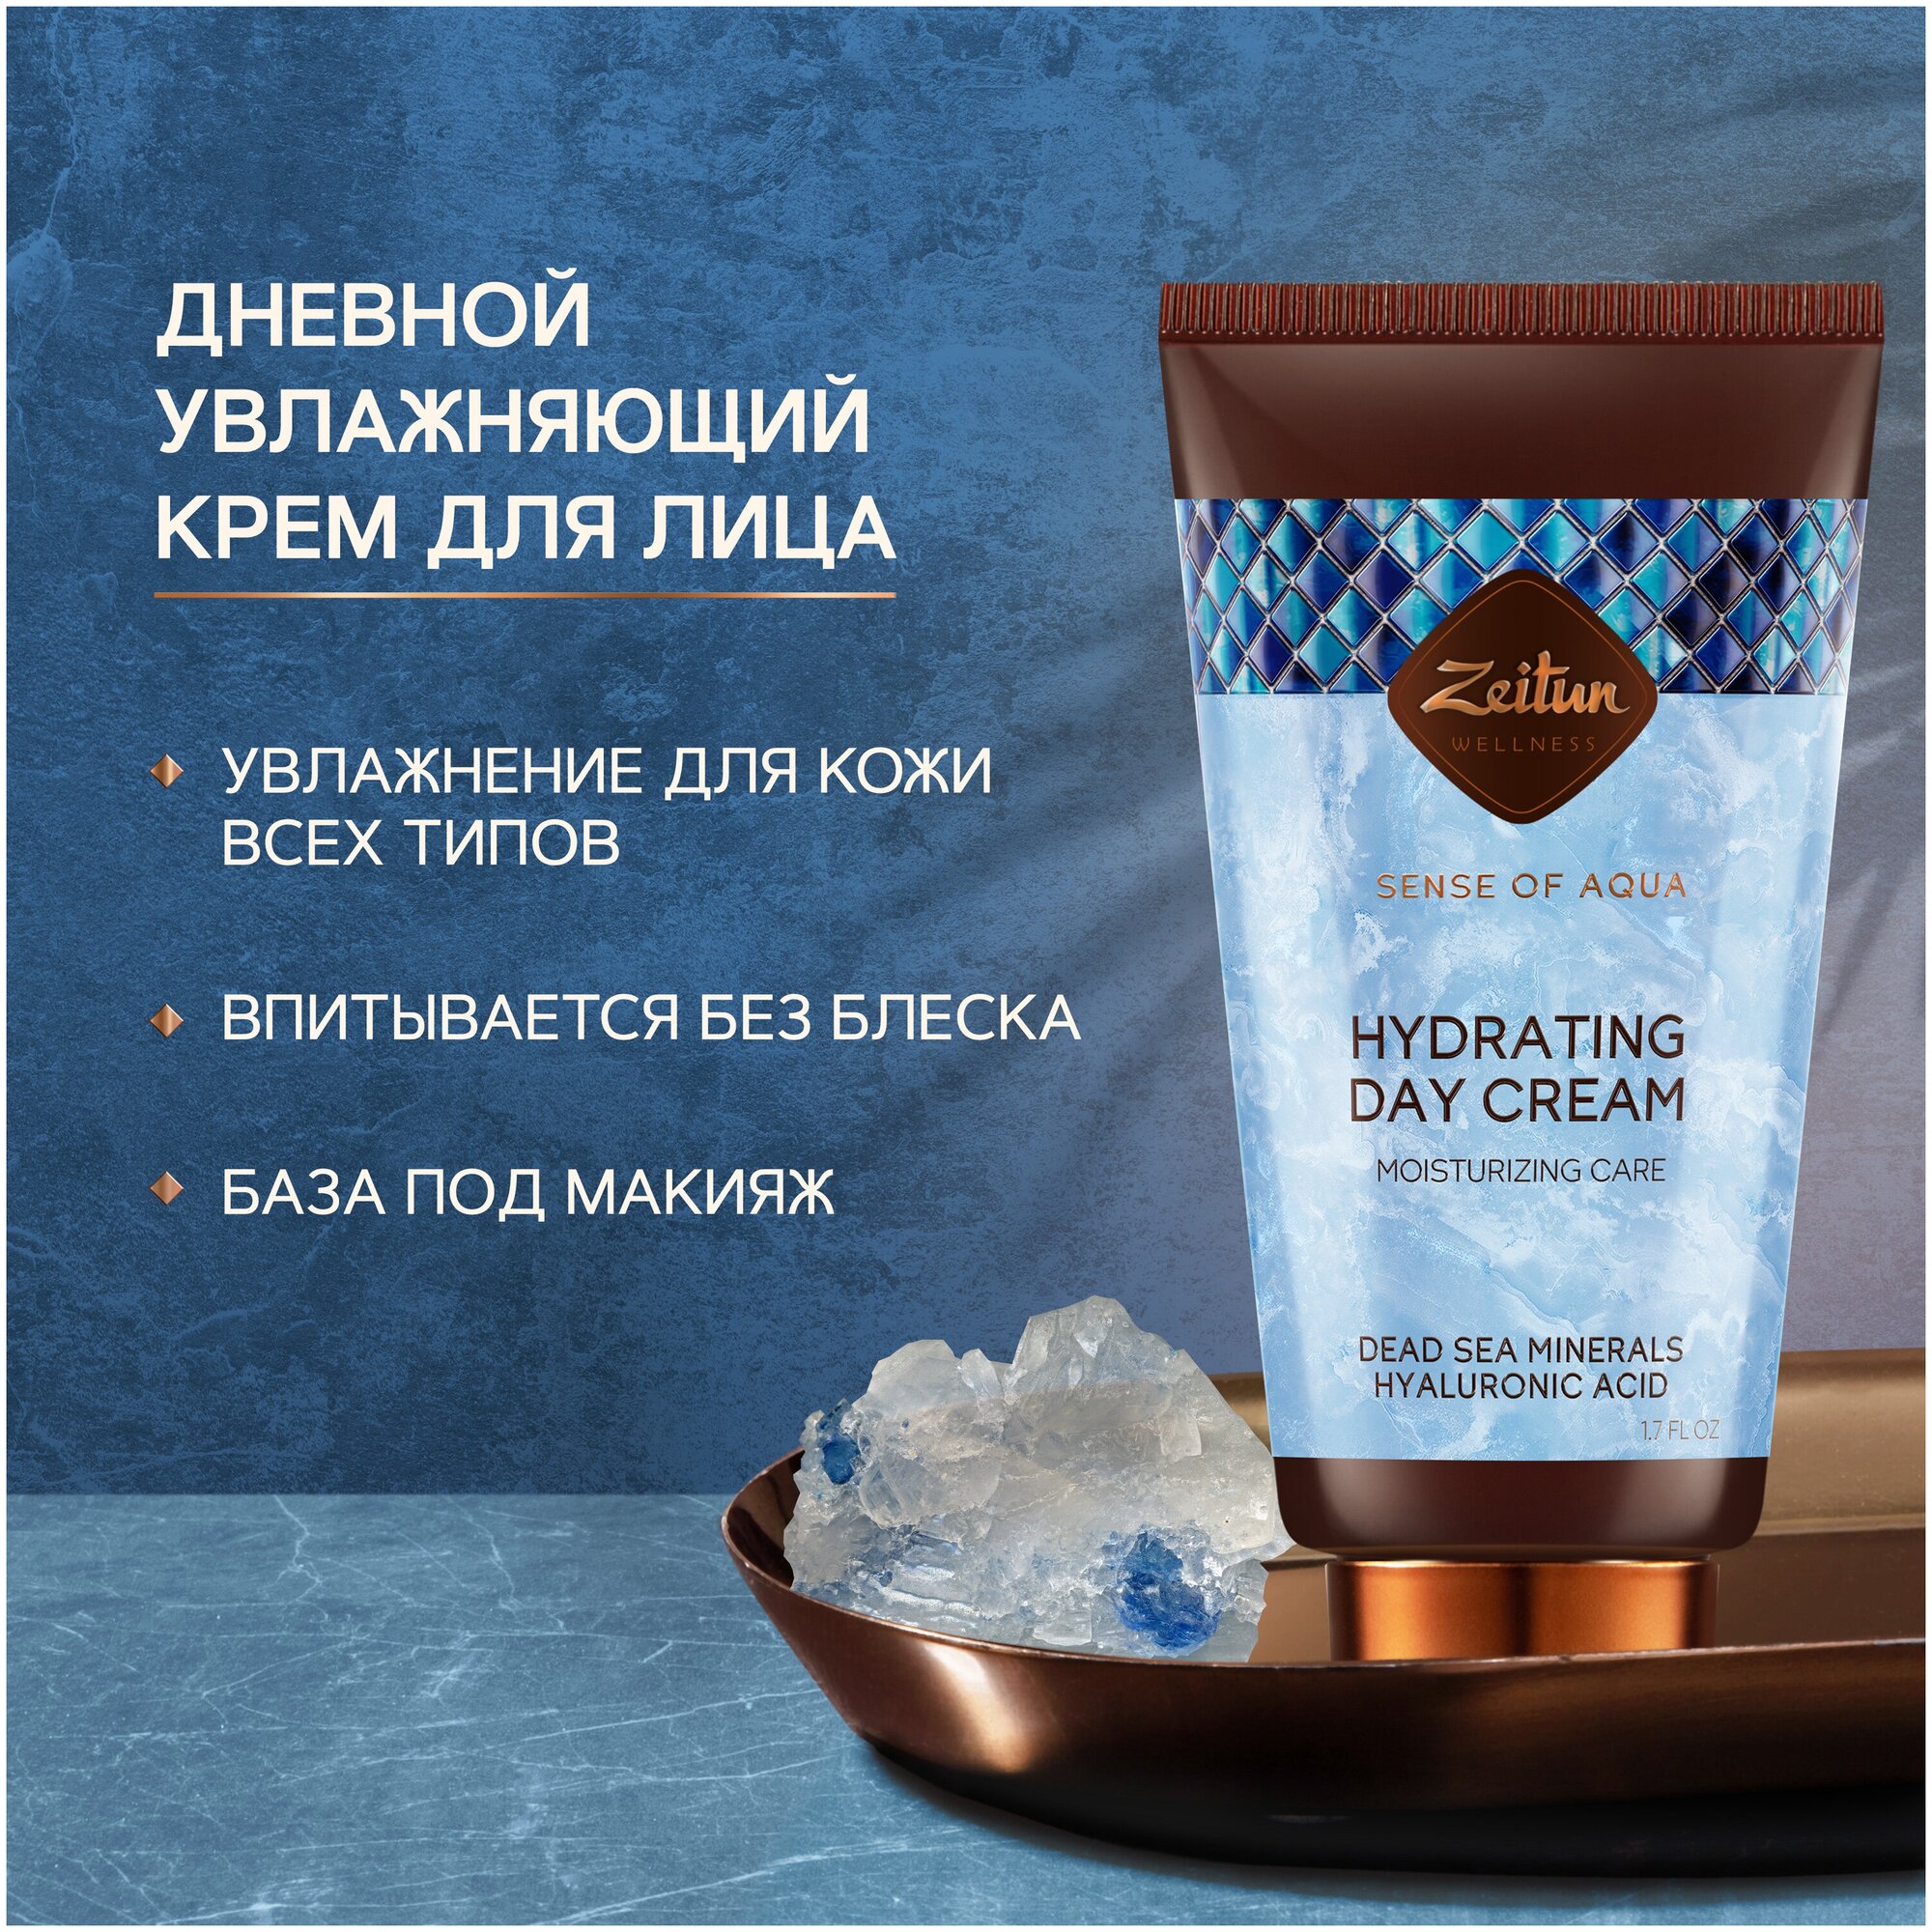 Zeitun Ritual of Aqua Hydrating Day Cream Ритуал увлажнения Дневной увлажняющий крем для лица